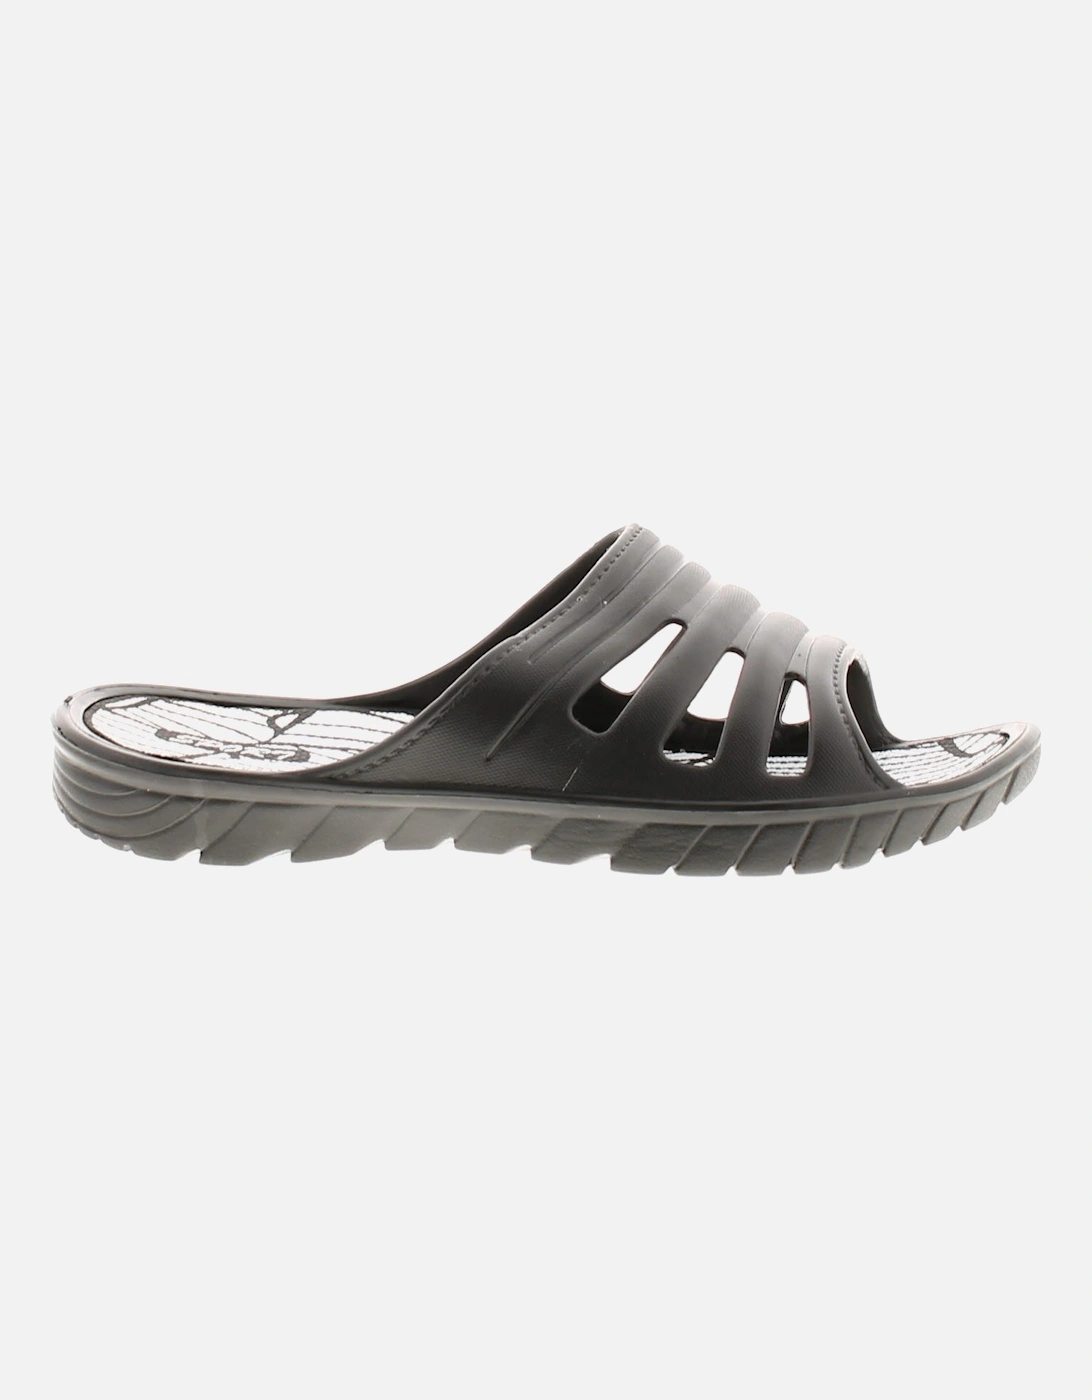 Womens Mule Sandals Flip Flops Mondial Slip On black UK Size